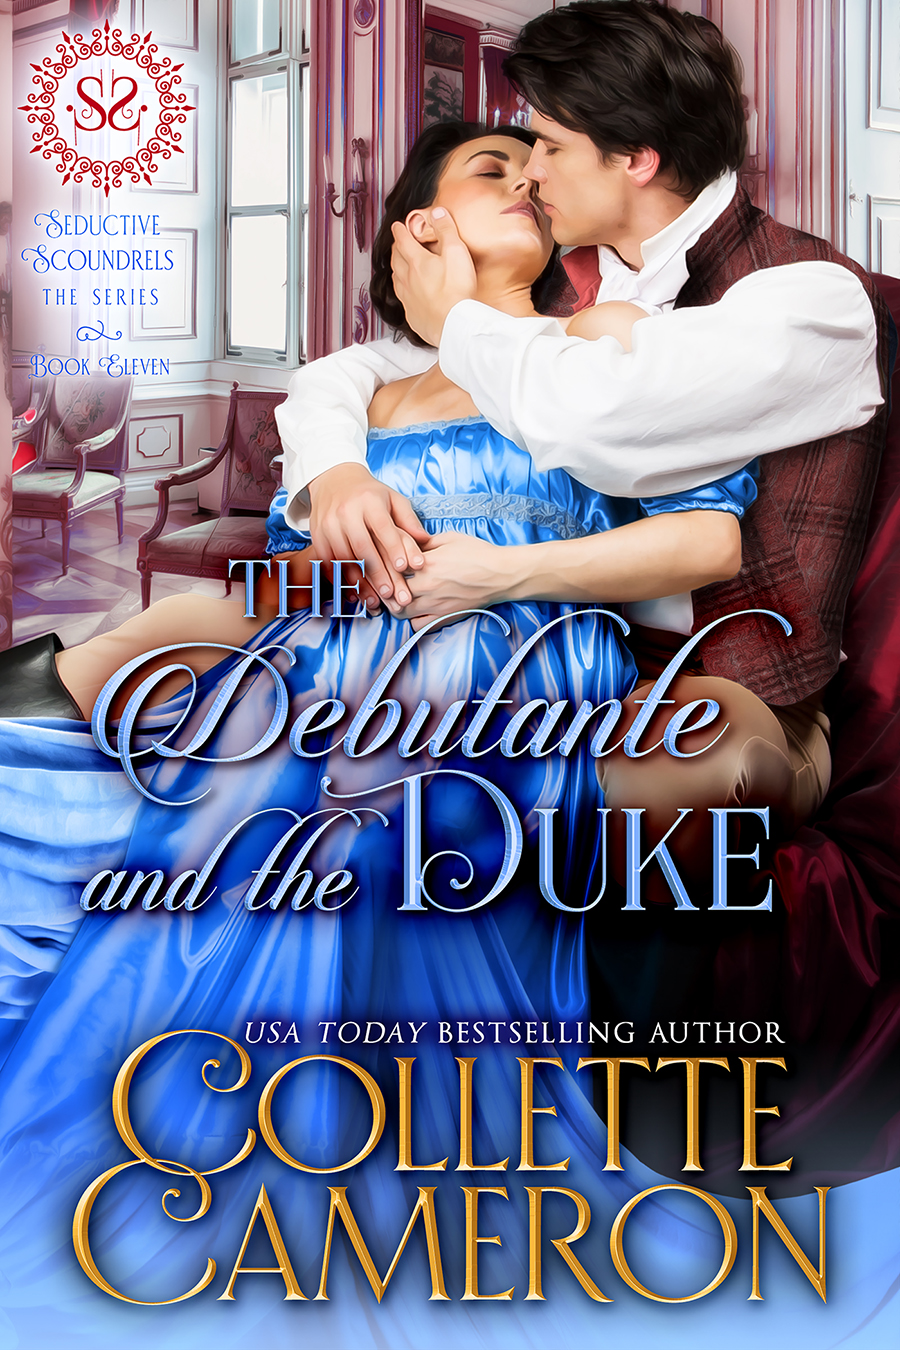 Collette's Historical Romances 30